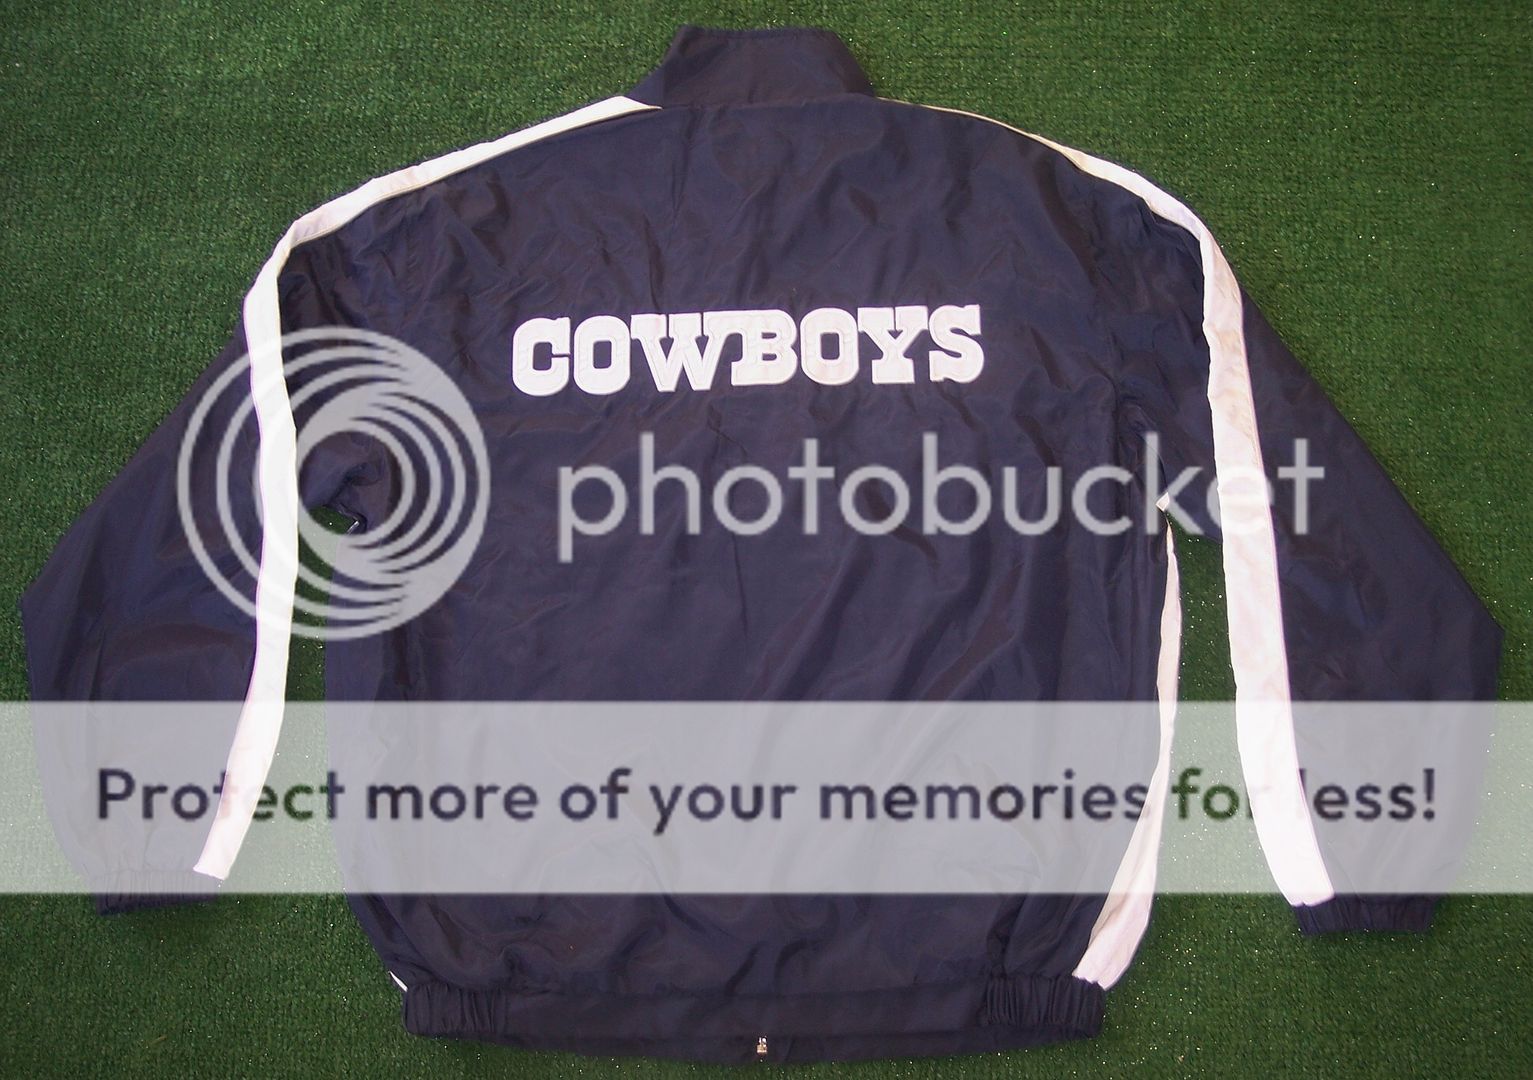   Weight Jacket Large Size NFL Authentic Product   Tony Romo  